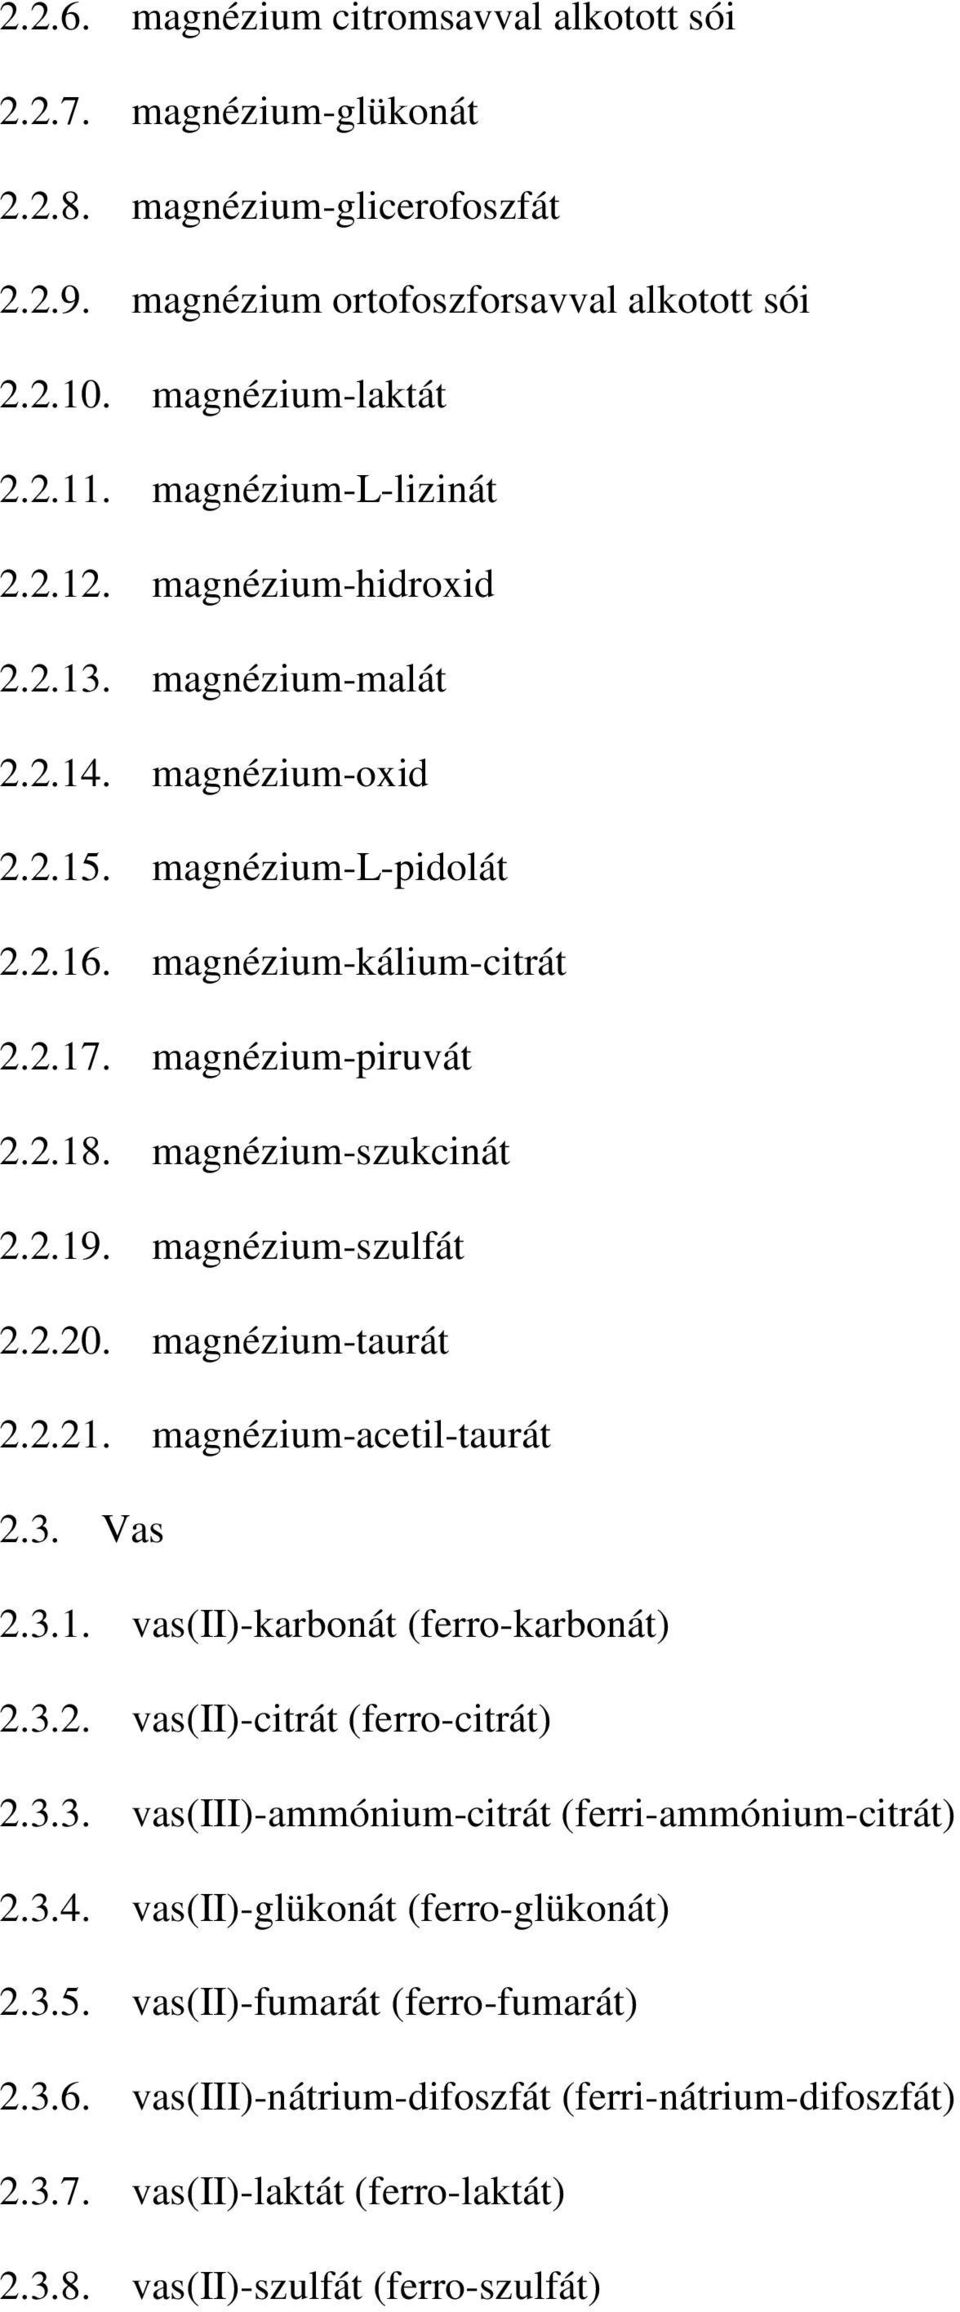 magnézium-szukcinát 2.2.19. magnézium-szulfát 2.2.20. magnézium-taurát 2.2.21. magnézium-acetil-taurát 2.3. Vas 2.3.1. vas(ii)-karbonát (ferro-karbonát) 2.3.2. vas(ii)-citrát (ferro-citrát) 2.3.3. vas(iii)-ammónium-citrát (ferri-ammónium-citrát) 2.